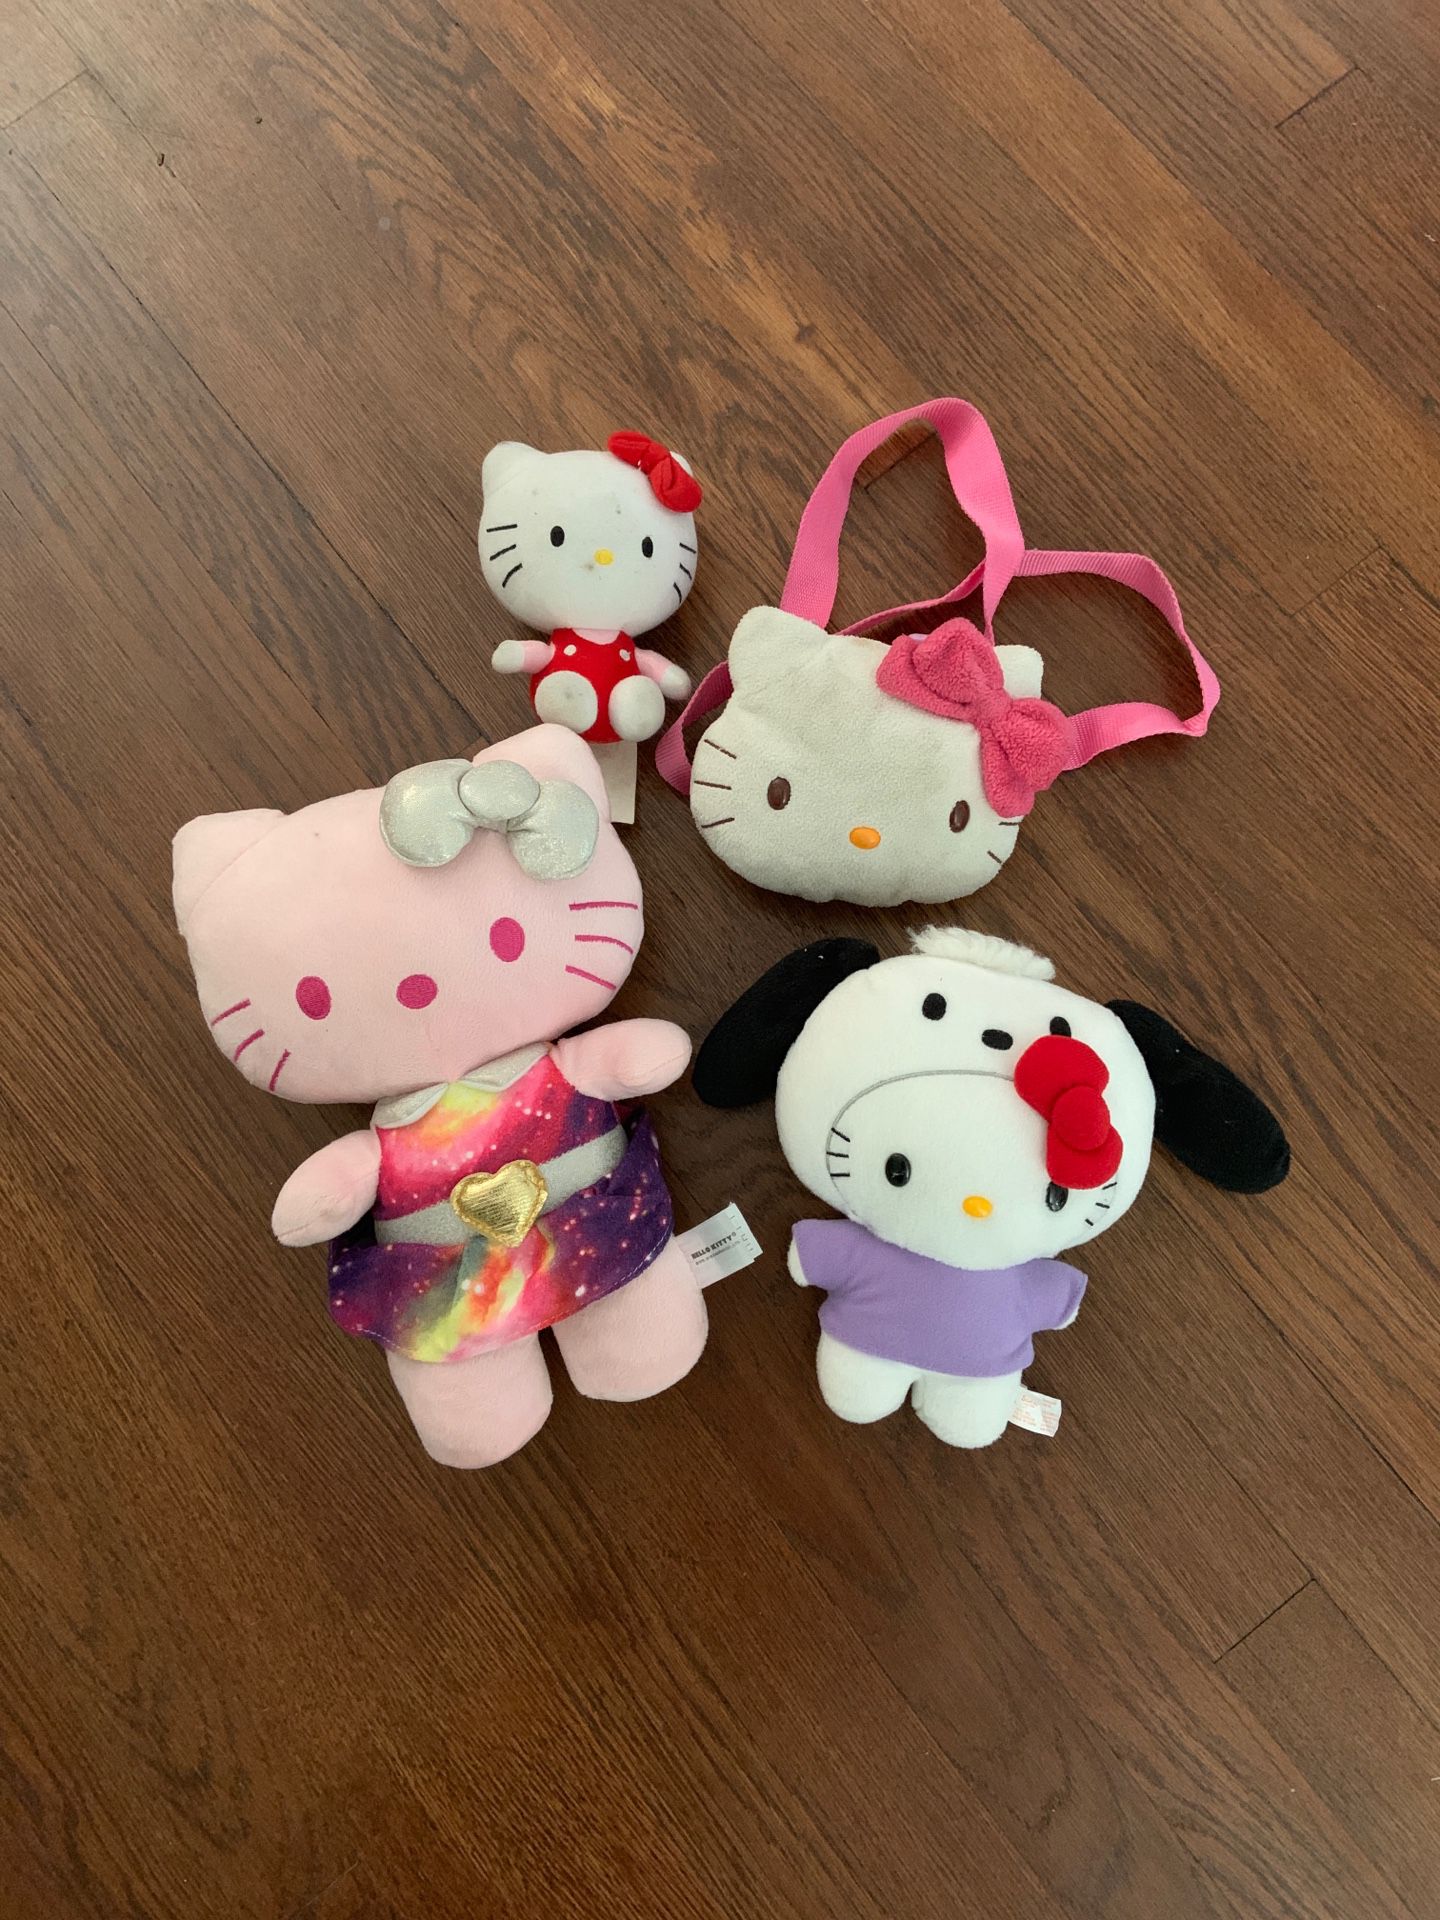 Hello Kitty plushy and purse bundle